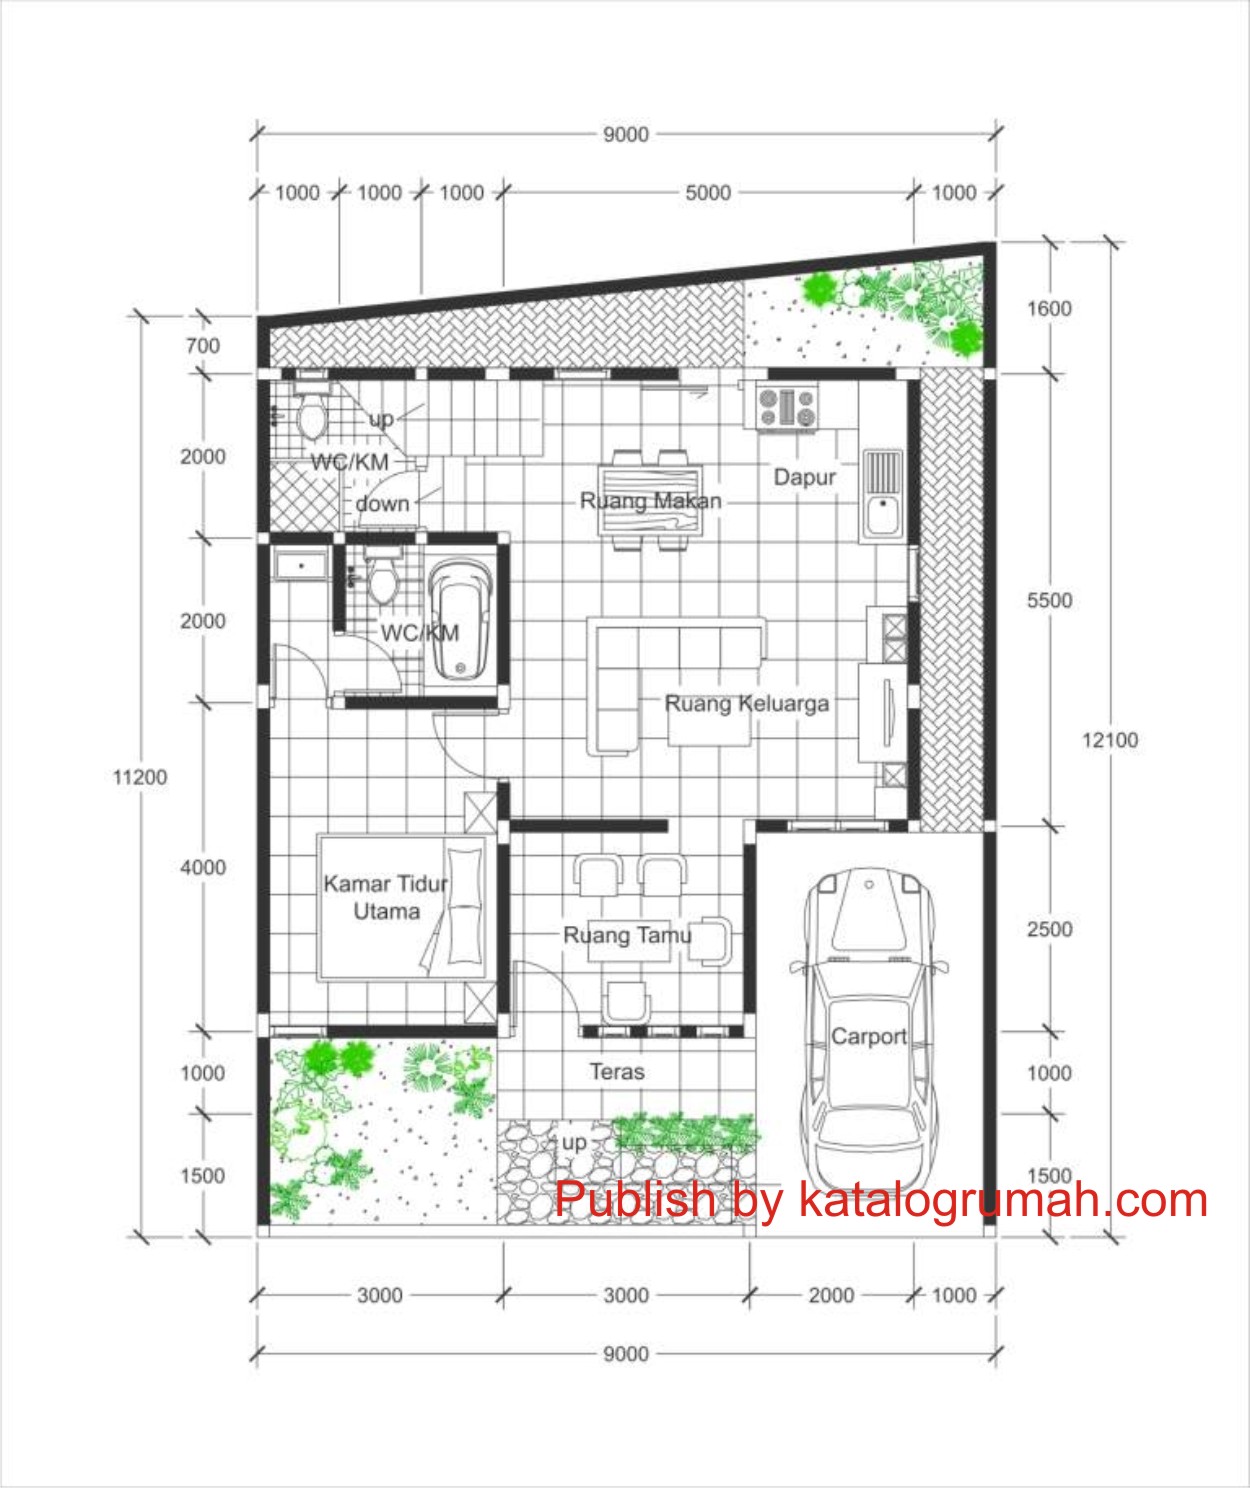 68 Desain Rumah Minimalis Ukuran 8x8 Desain Rumah Minimalis Terbaru